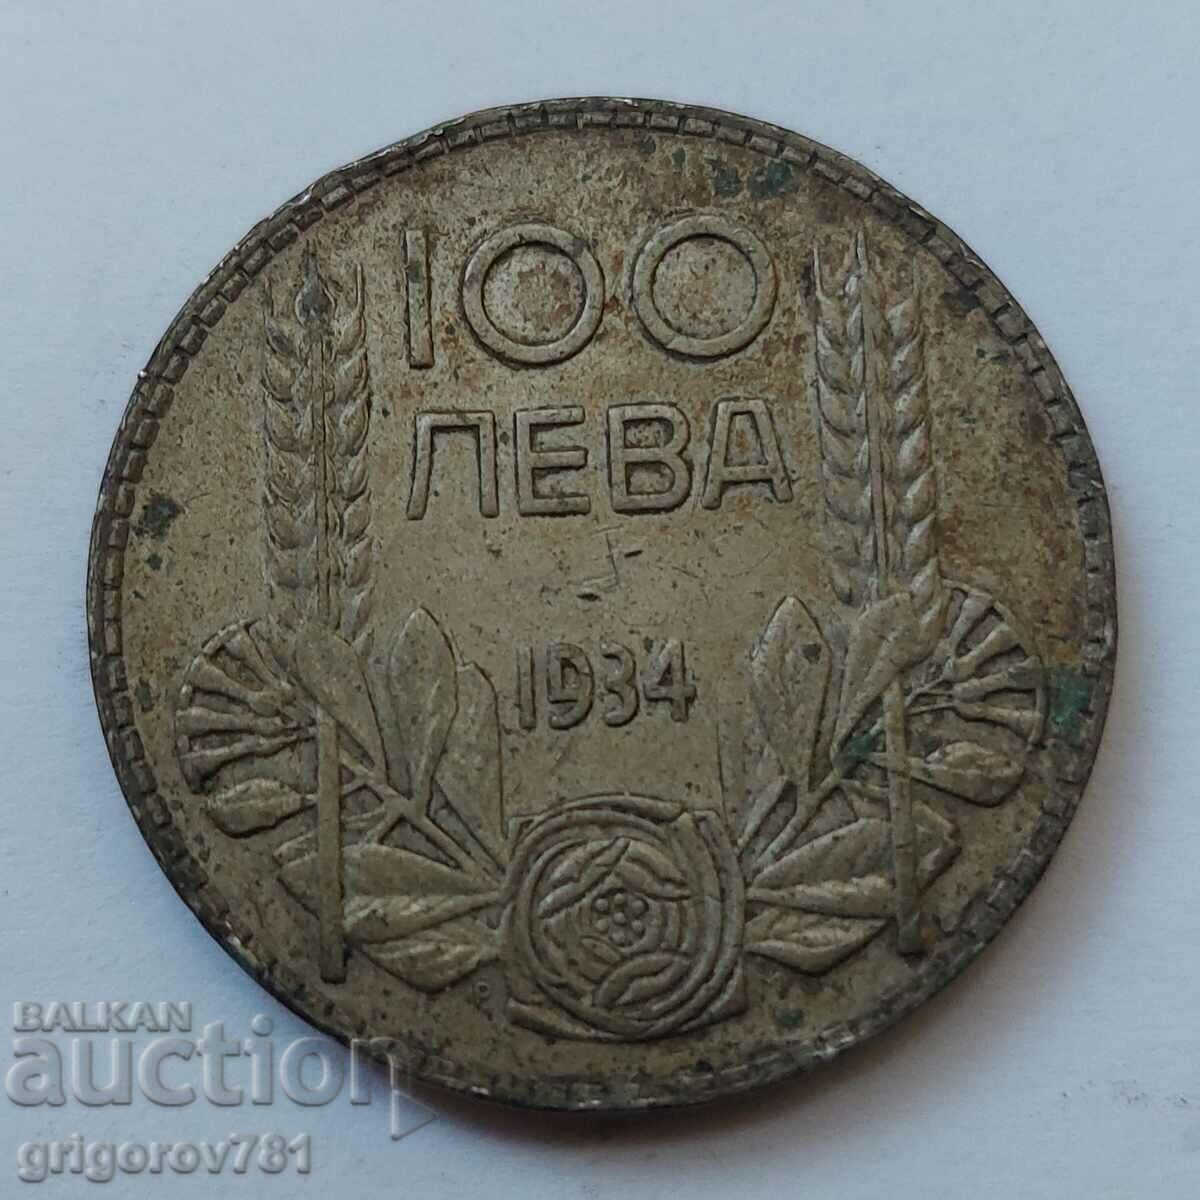 100 leva silver Bulgaria 1934 - silver coin #24